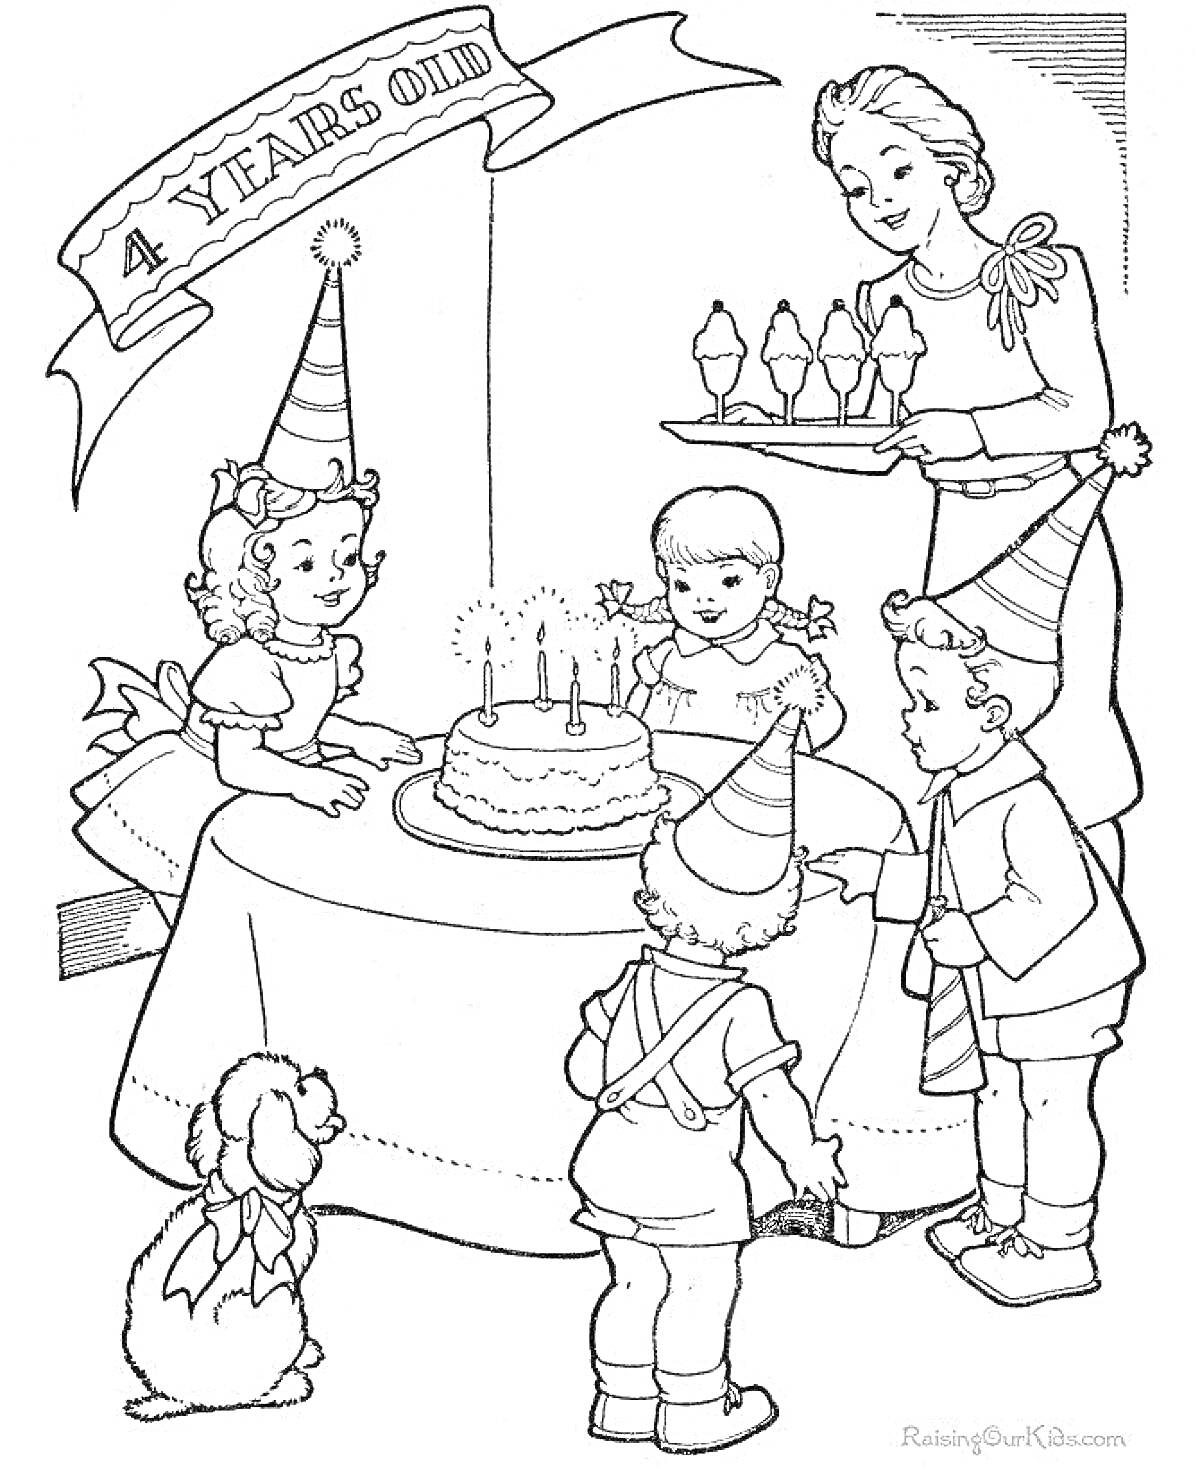 День рождения: дети в праздничных колпаках вокруг торта с четырьмя свечами, взрослый подносит чашки с мороженым, игрушечная собачка